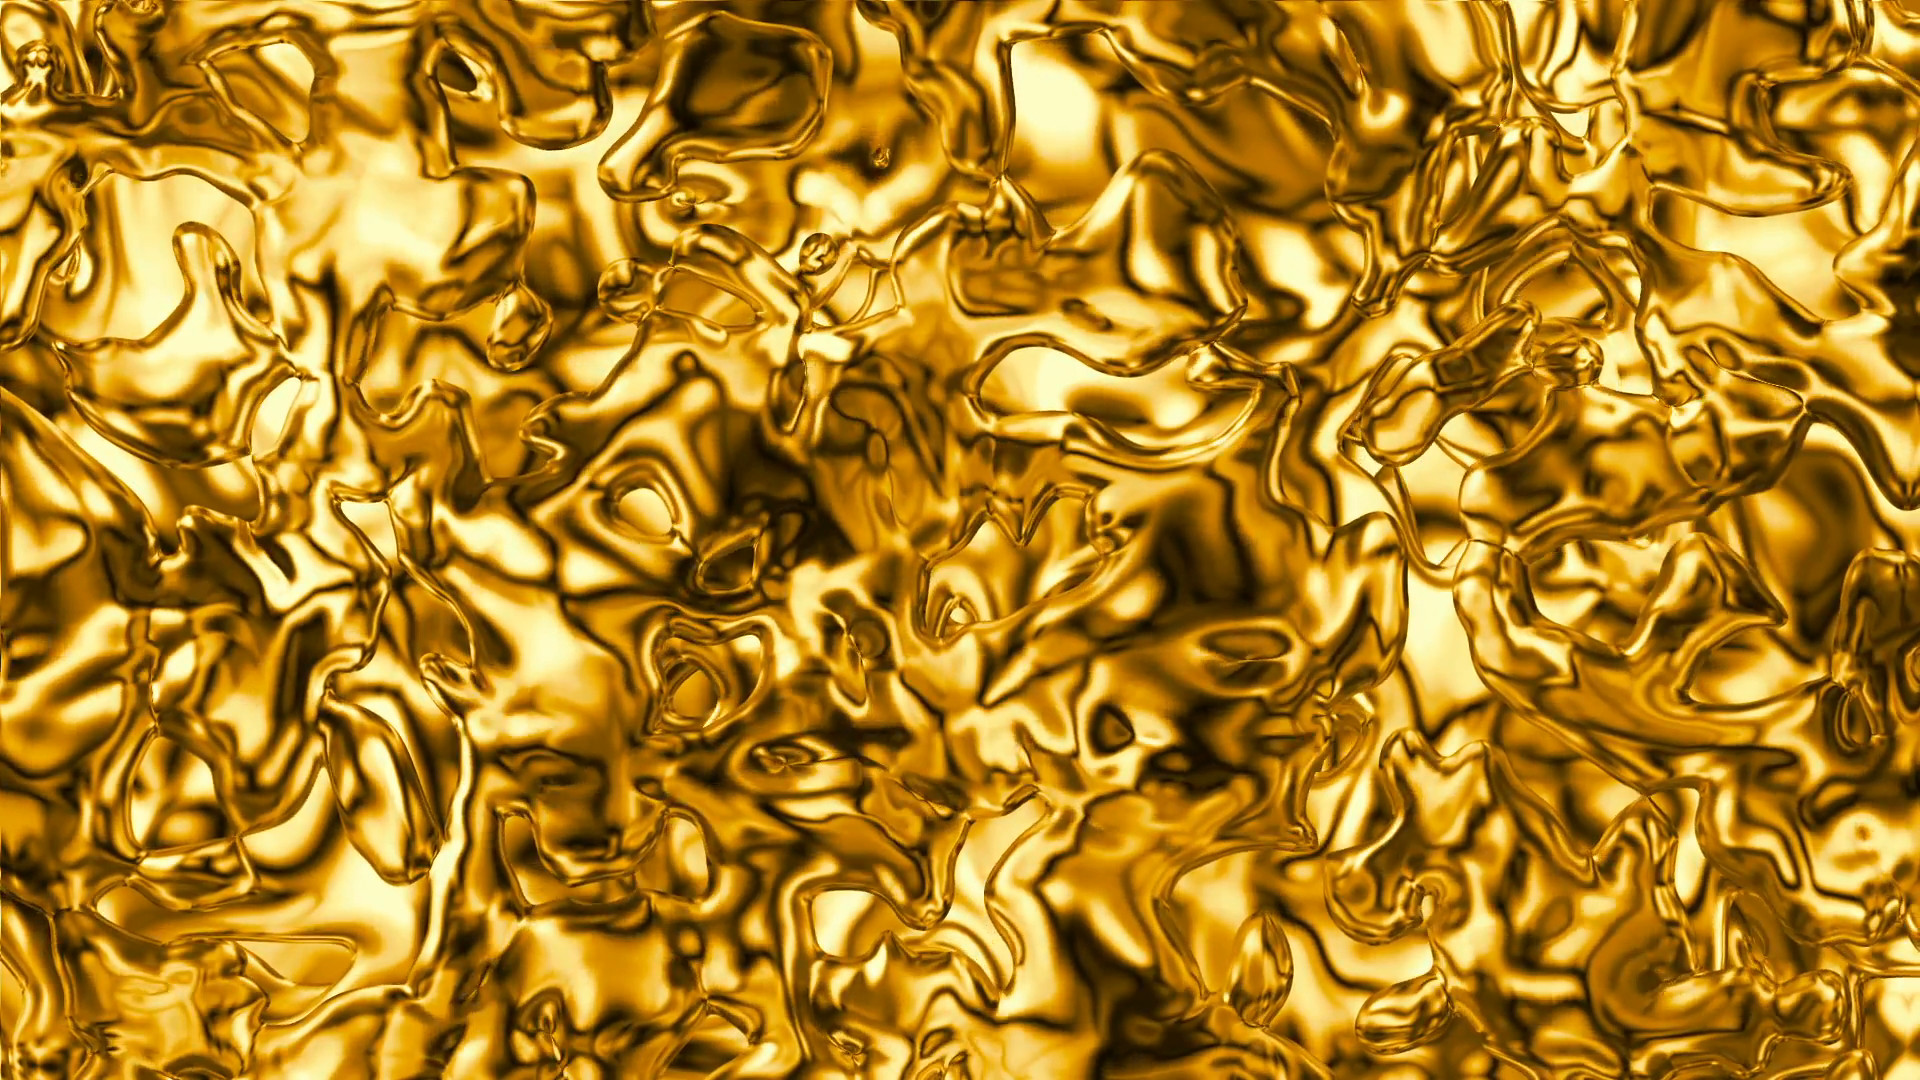 Золото металлик lx19240